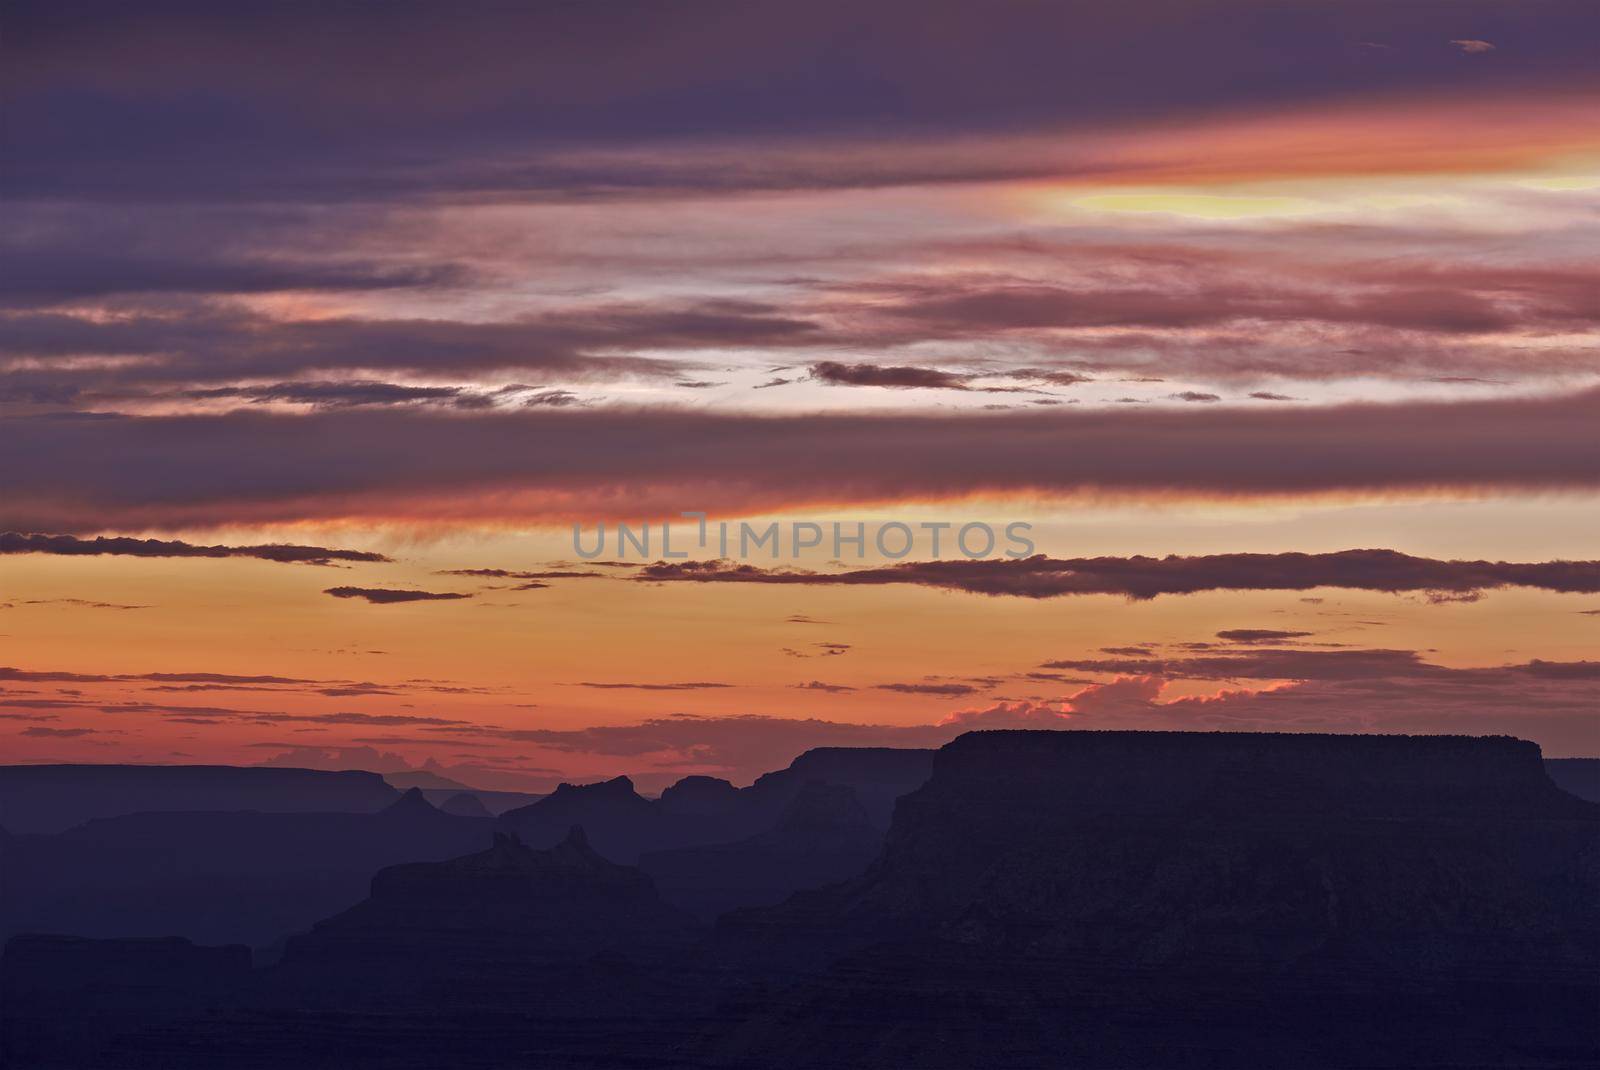 Grand Canyon Sunset Scenery. Grand Canyon National Park, Arizona, USA. Beautiful Sunset Sky. Arizona Photo Collection.